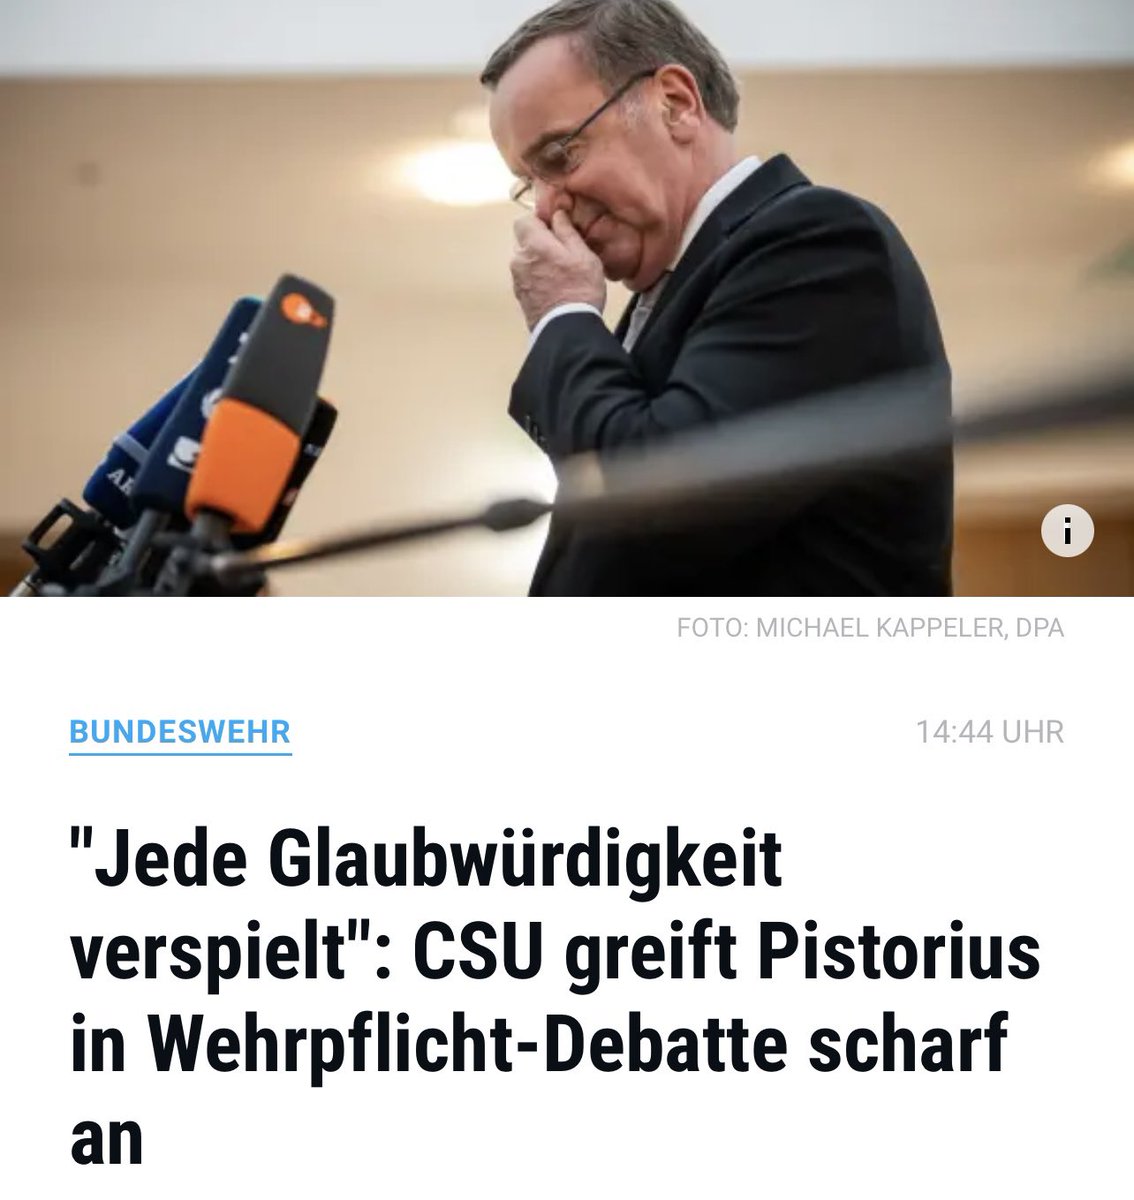 'Die CSU hat jede Glaubwürdigkeit verspielt!'

@andreasscheuer verspricht #Maut, die nie kam, aber den dt. Steuerzahler € 240 Mio. kostete.

@MarkusBlume @MartinHuberCSU @Markus_Soeder